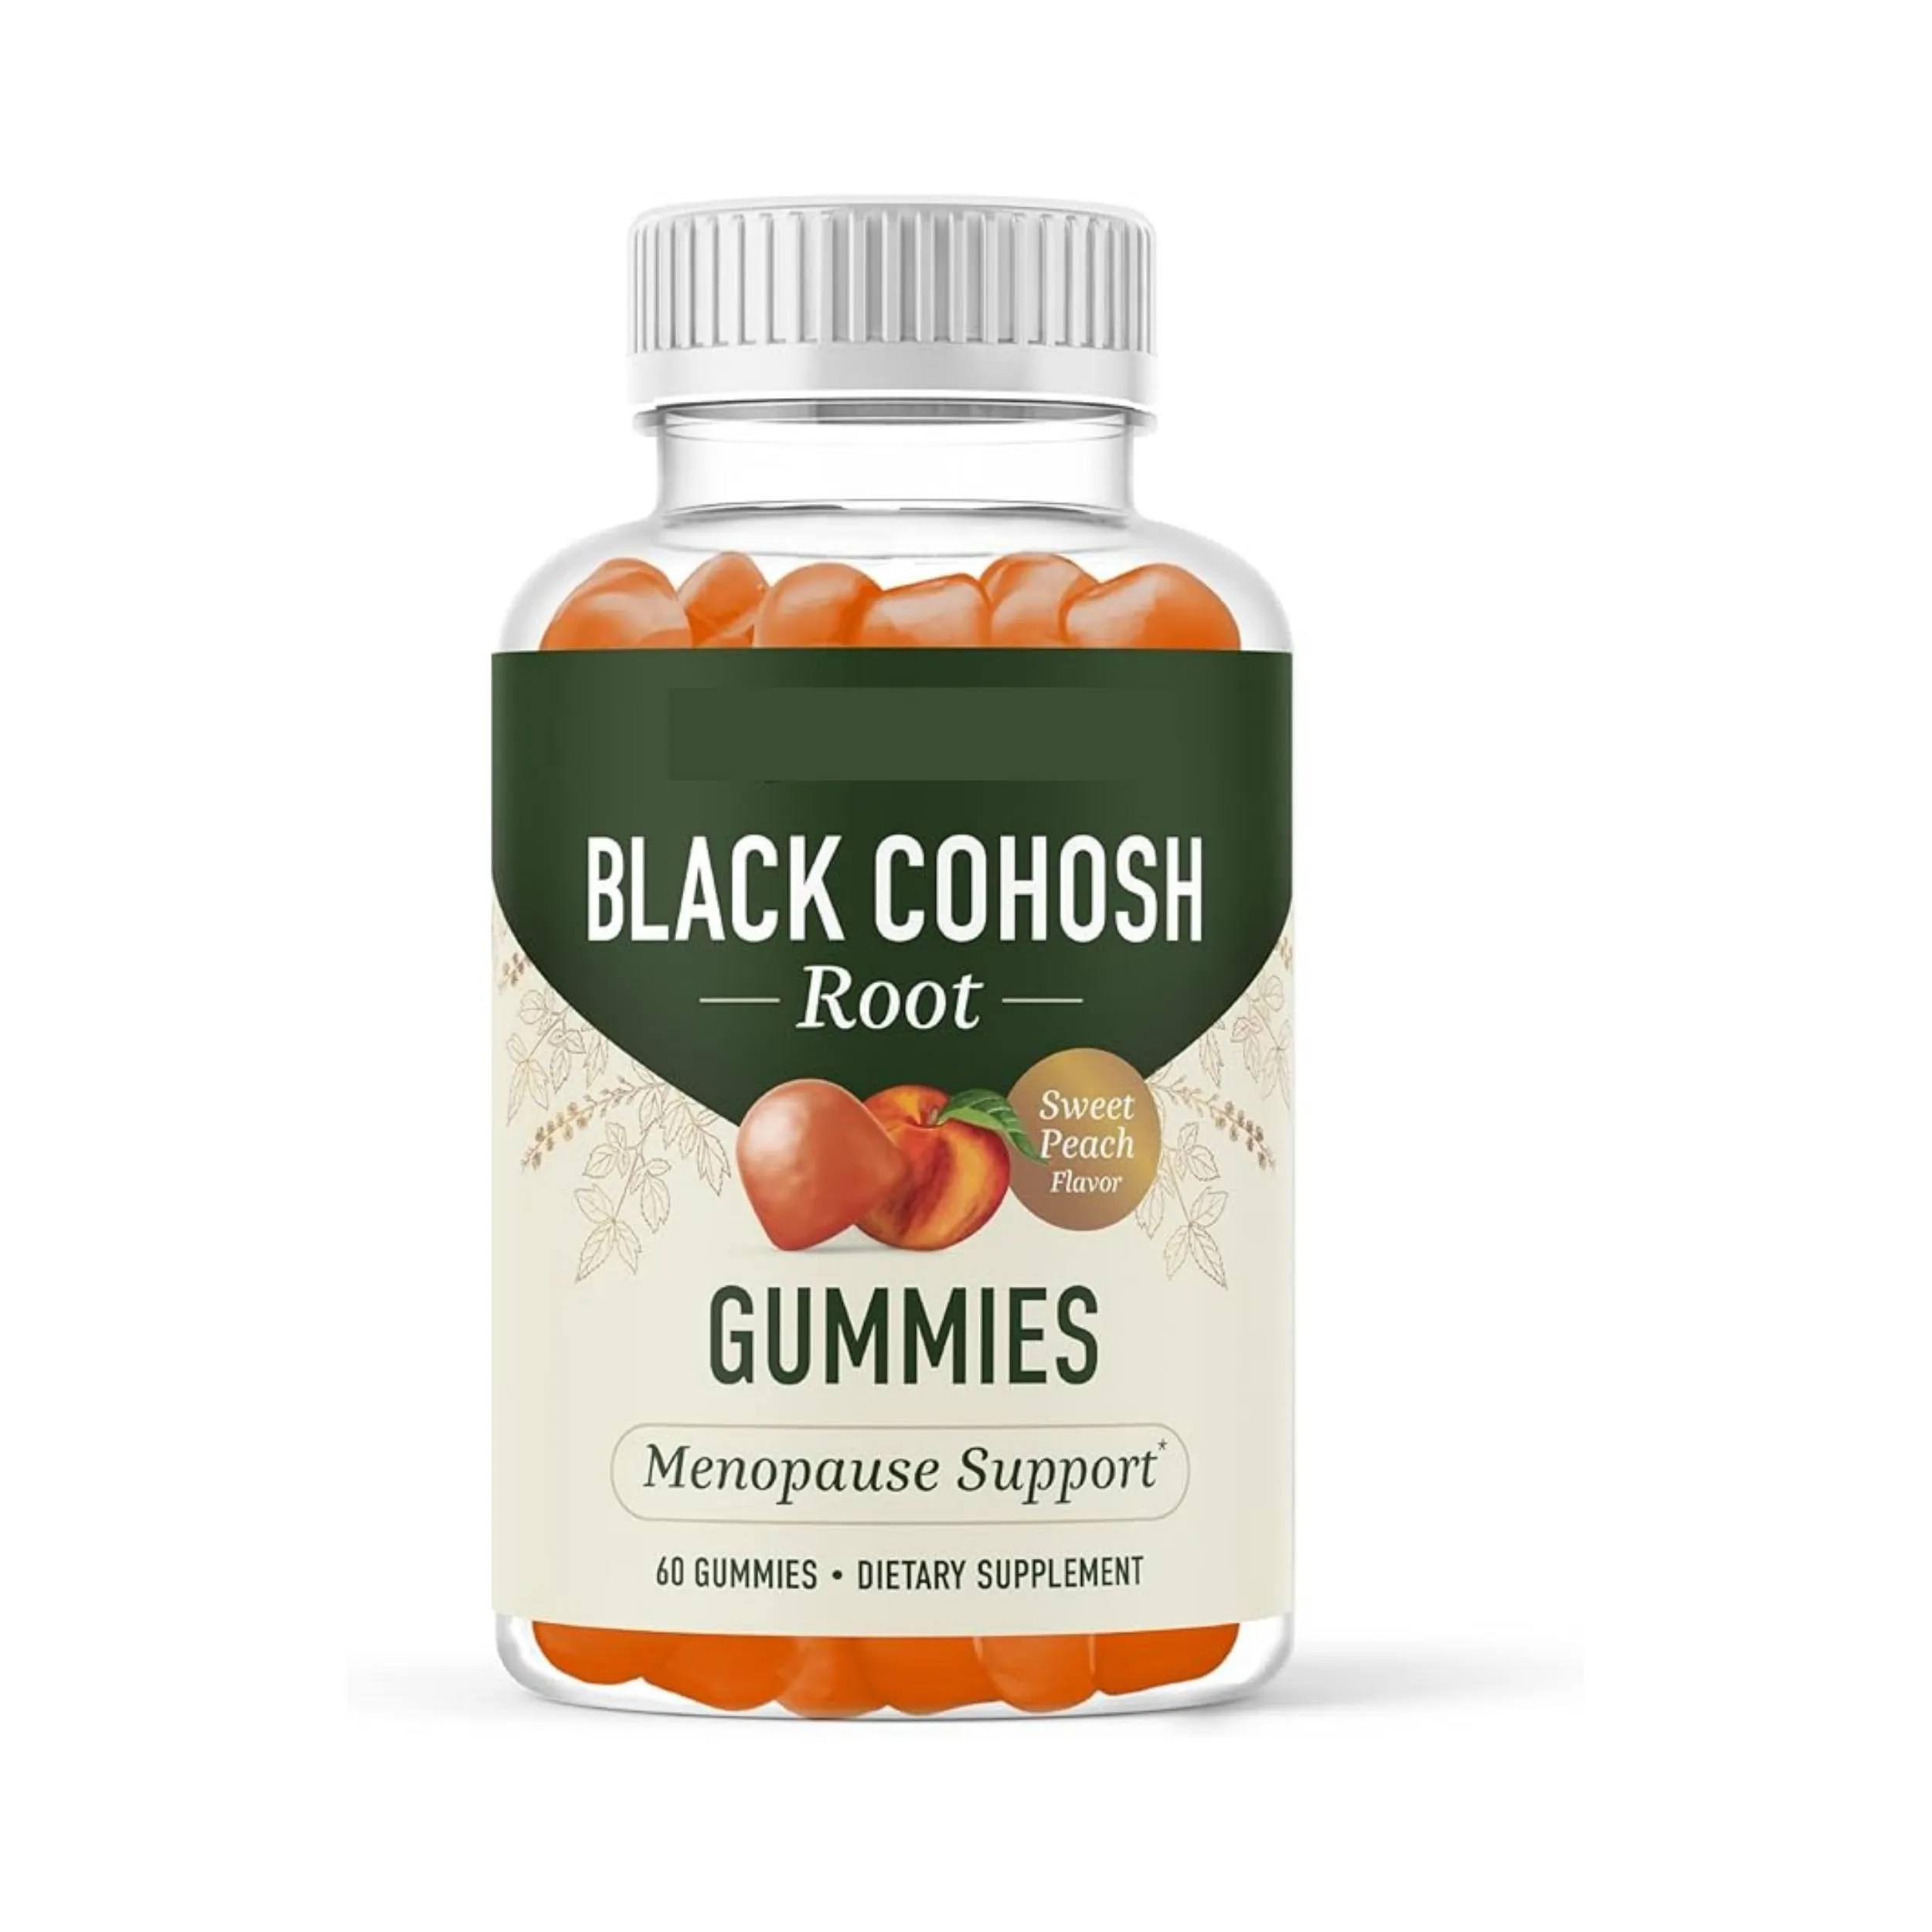 OEM Black cohosh gummies สำหรับผู้หญิง | บรรเทาวัยหมดประจำเดือนสำหรับกะพริบร้อนและเหงื่อออกตอนกลางคืน | สารสกัดจากราก cohosh สีดำ | มังสวิรัติ